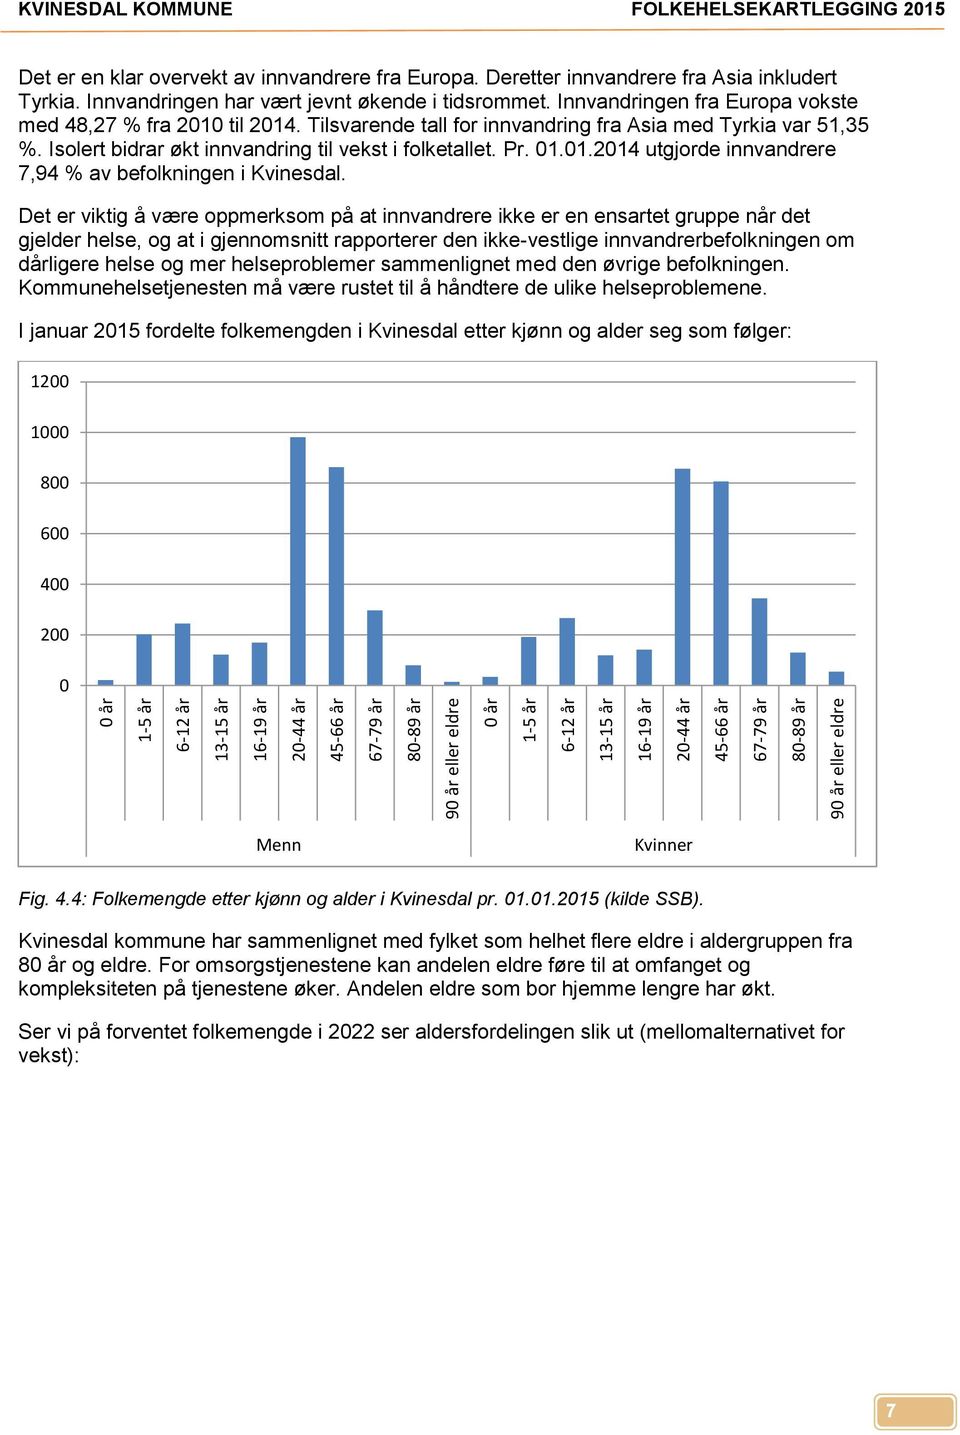 Innvandringen fra Europa vokste med 48,27 % fra 2010 til 2014. Tilsvarende tall for innvandring fra Asia med Tyrkia var 51,35 %. Isolert bidrar økt innvandring til vekst i folketallet. Pr. 01.01.2014 utgjorde innvandrere 7,94 % av befolkningen i Kvinesdal.